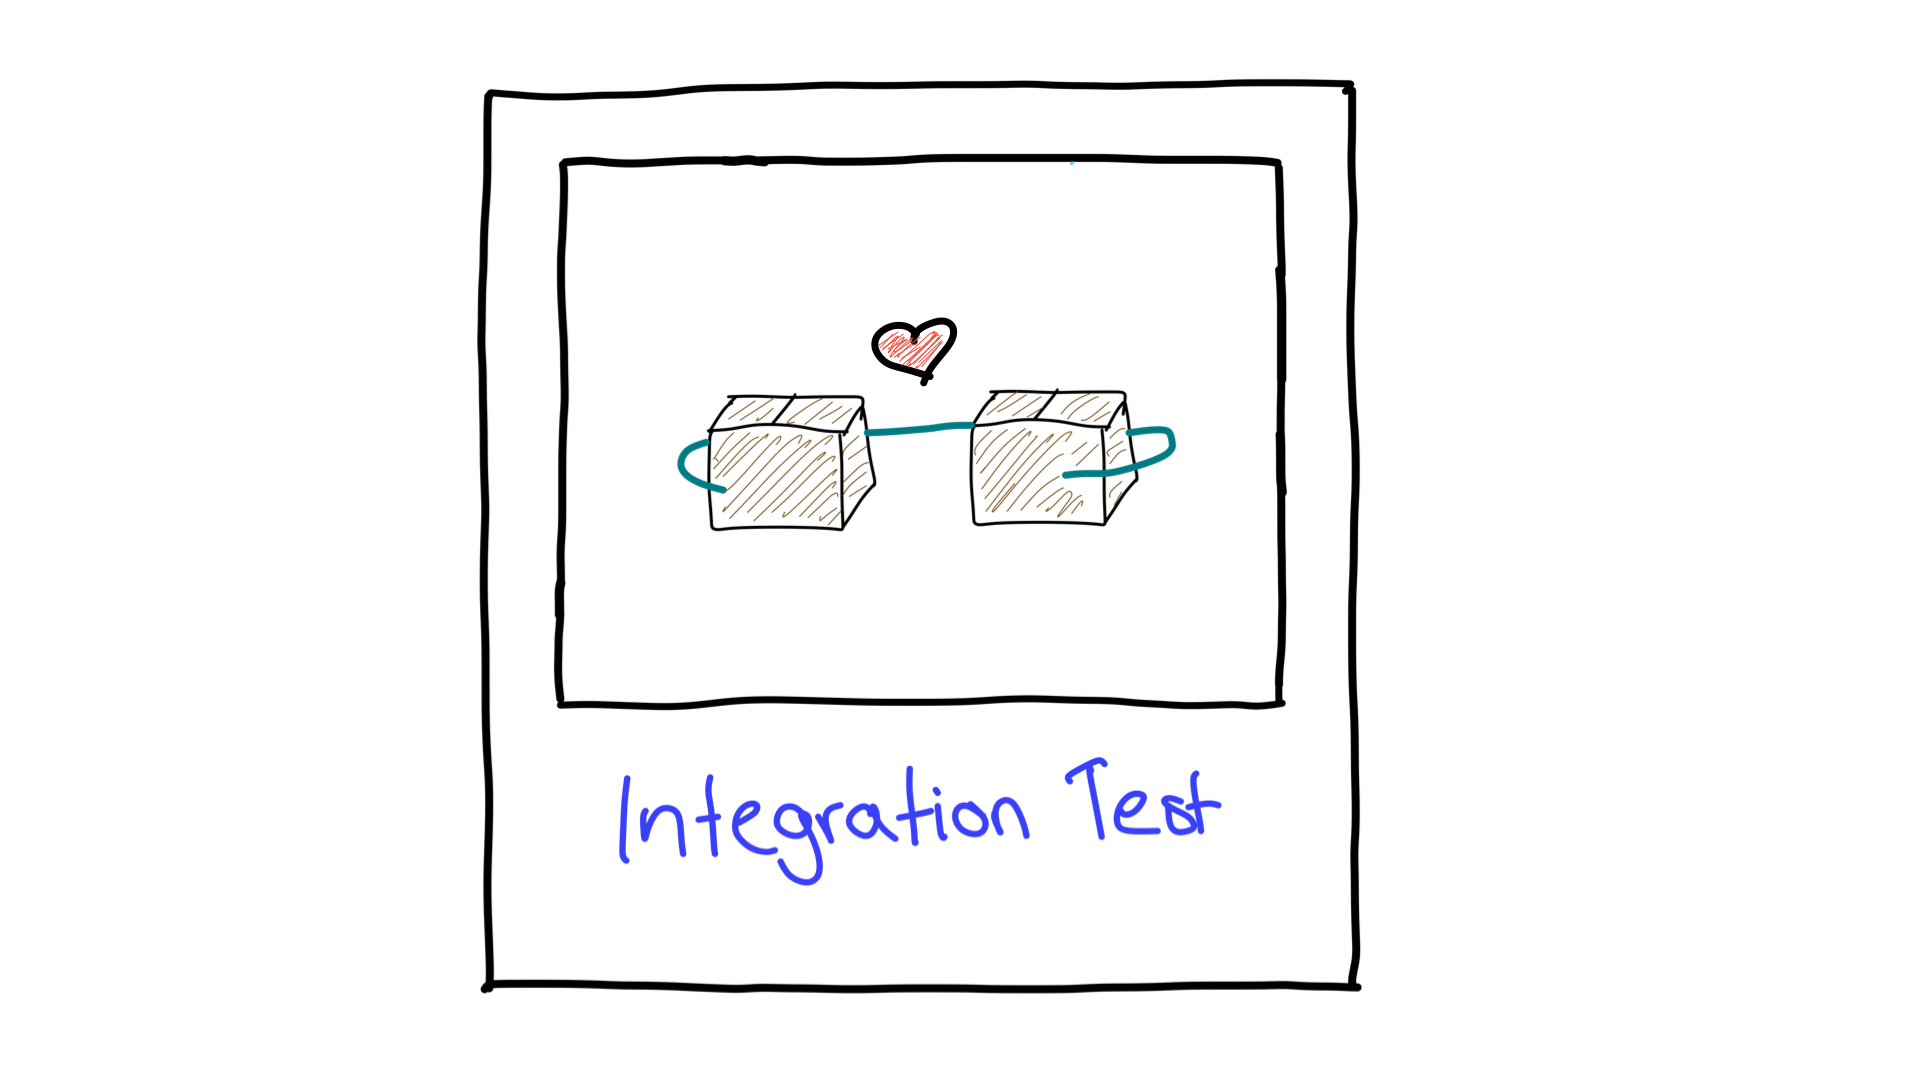 두 단위가 함께 작동하는 방식을 보여주는 통합 테스트의 단순화된 묘사